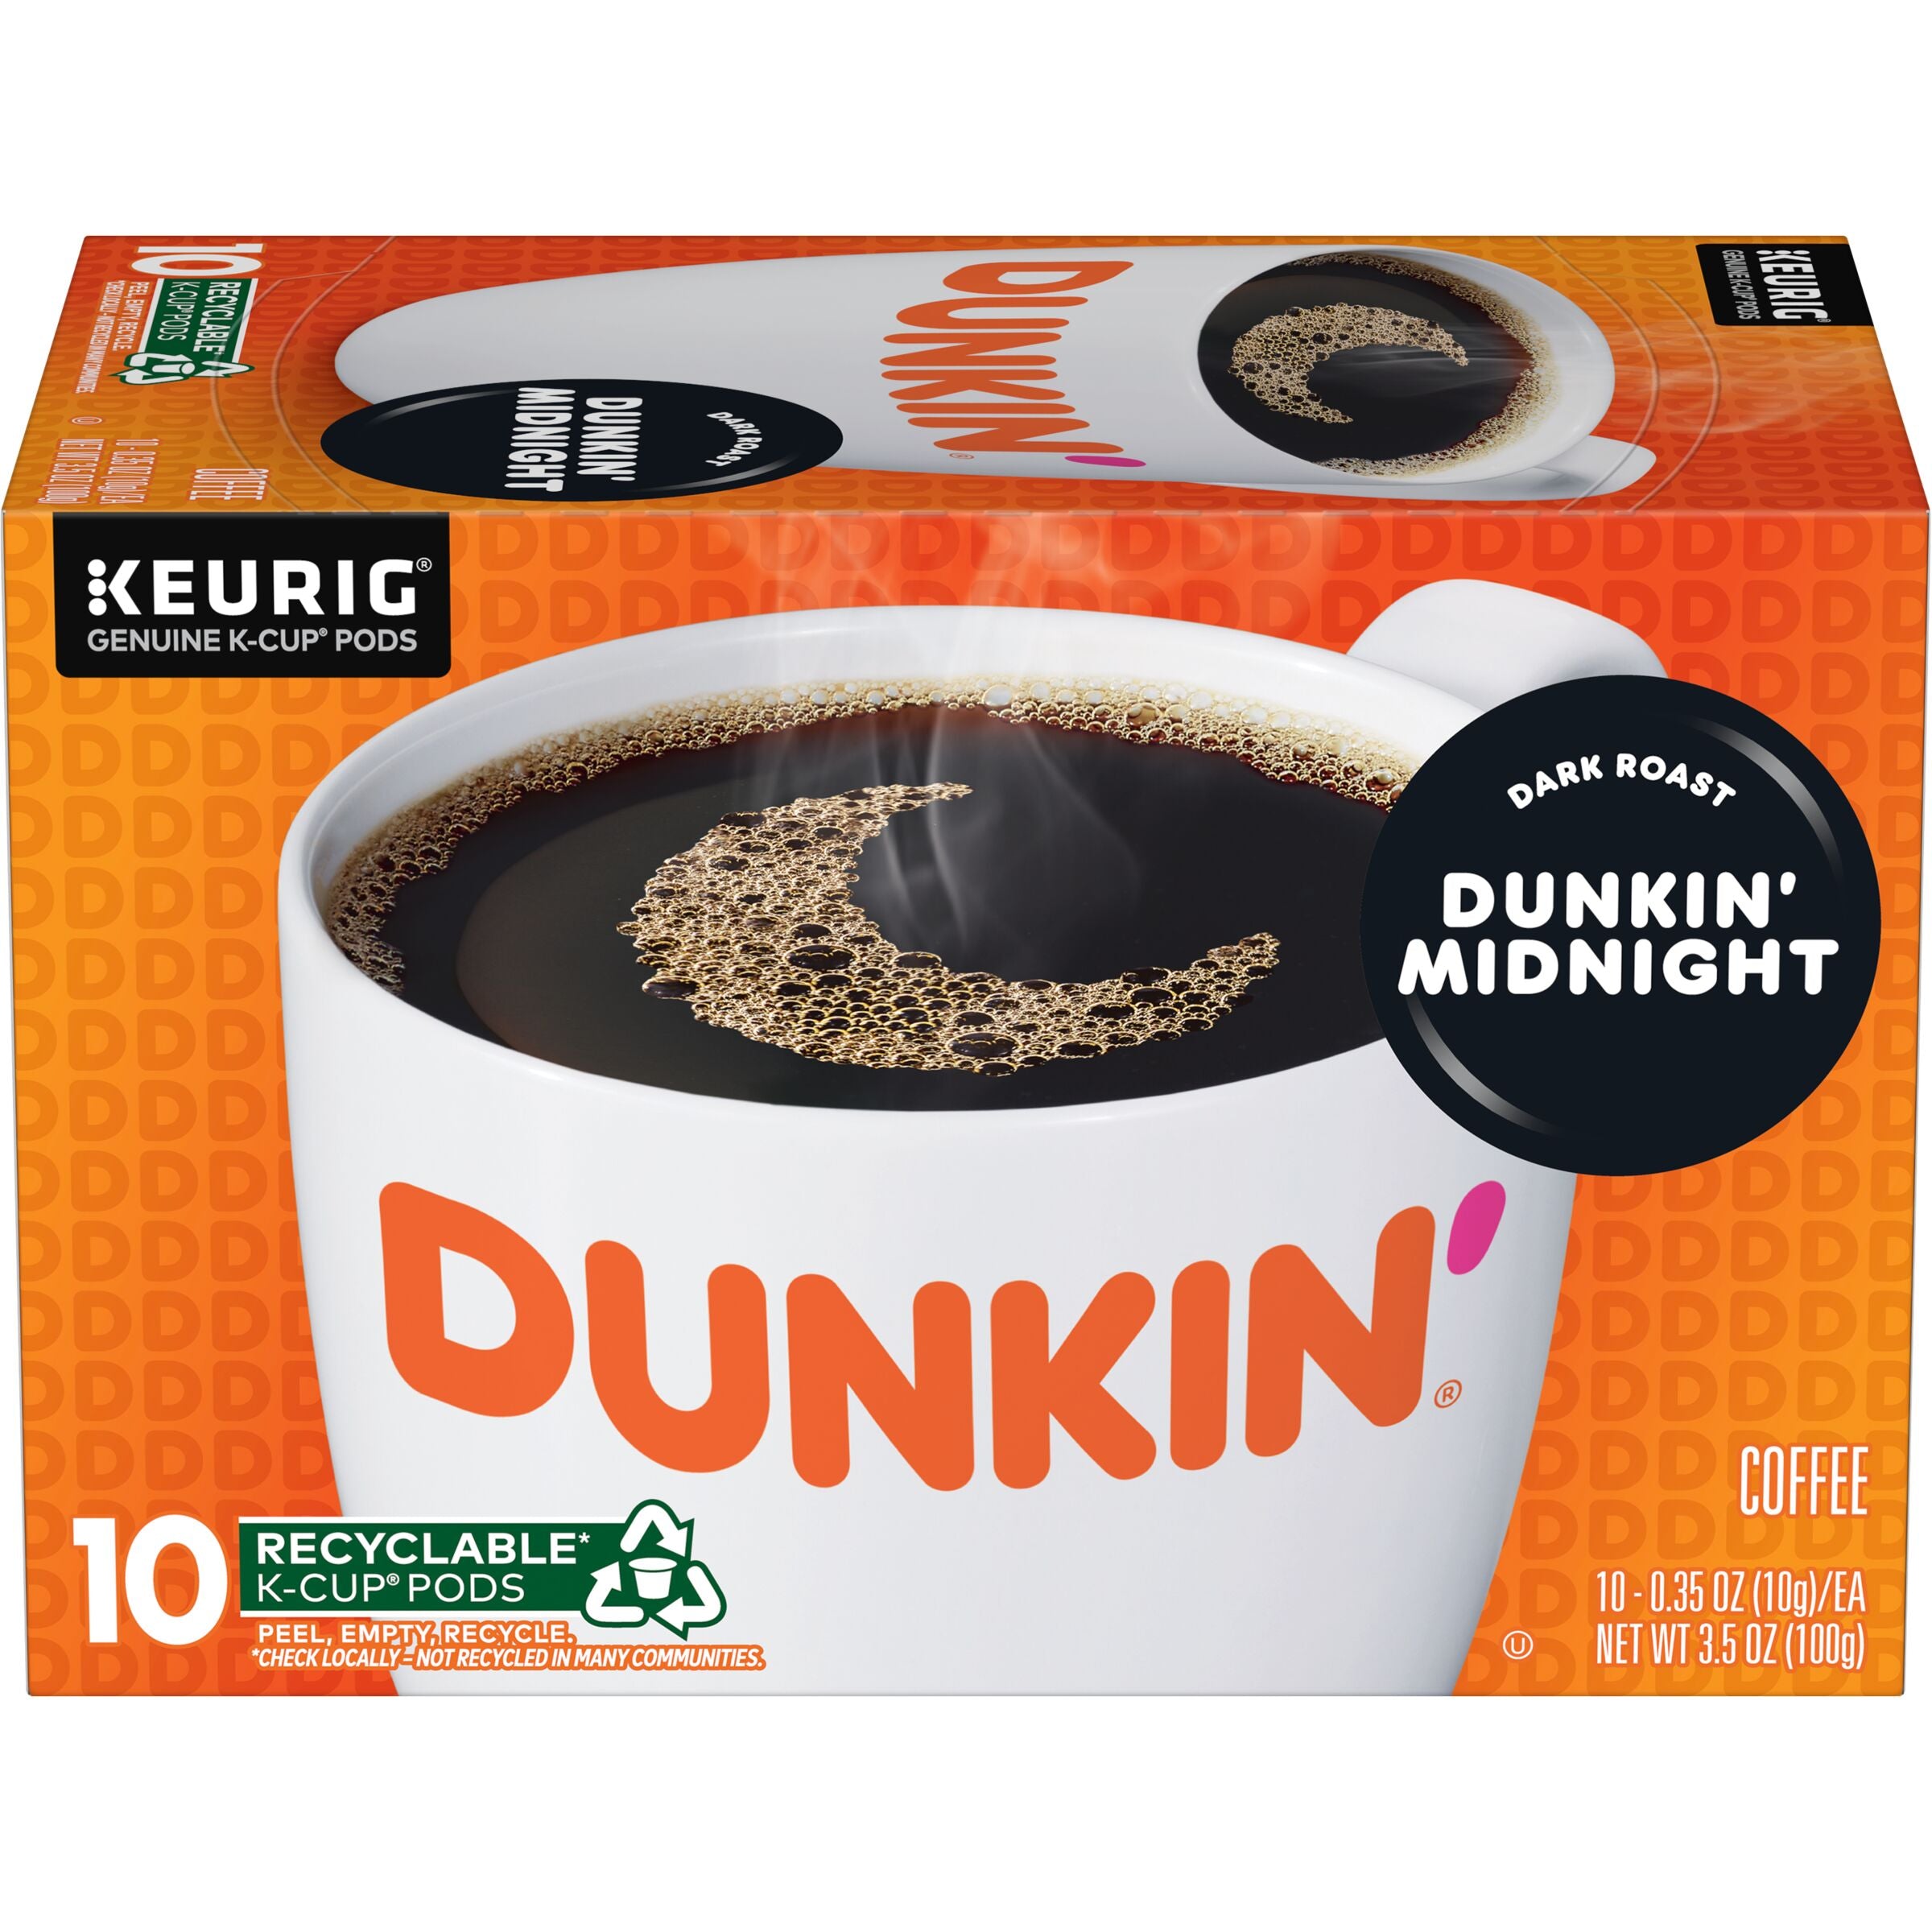 Dunkin' Midnight Dark Roast Coffee, K-Cup Pods